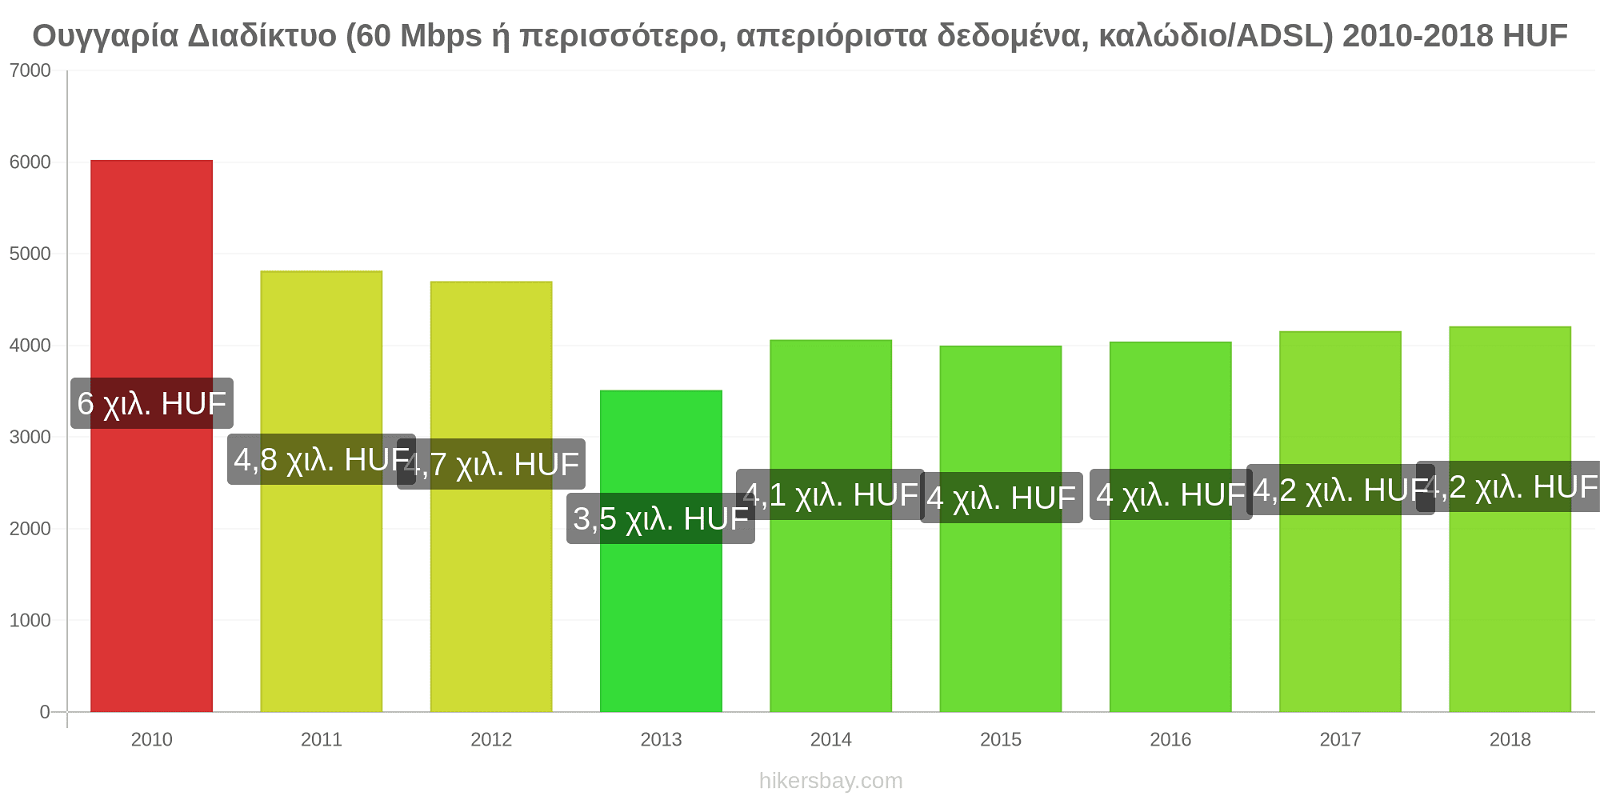 Ουγγαρία αλλαγές τιμών Διαδίκτυο (60 Mbps ή περισσότερο, απεριόριστα δεδομένα, καλώδιο/ADSL) hikersbay.com